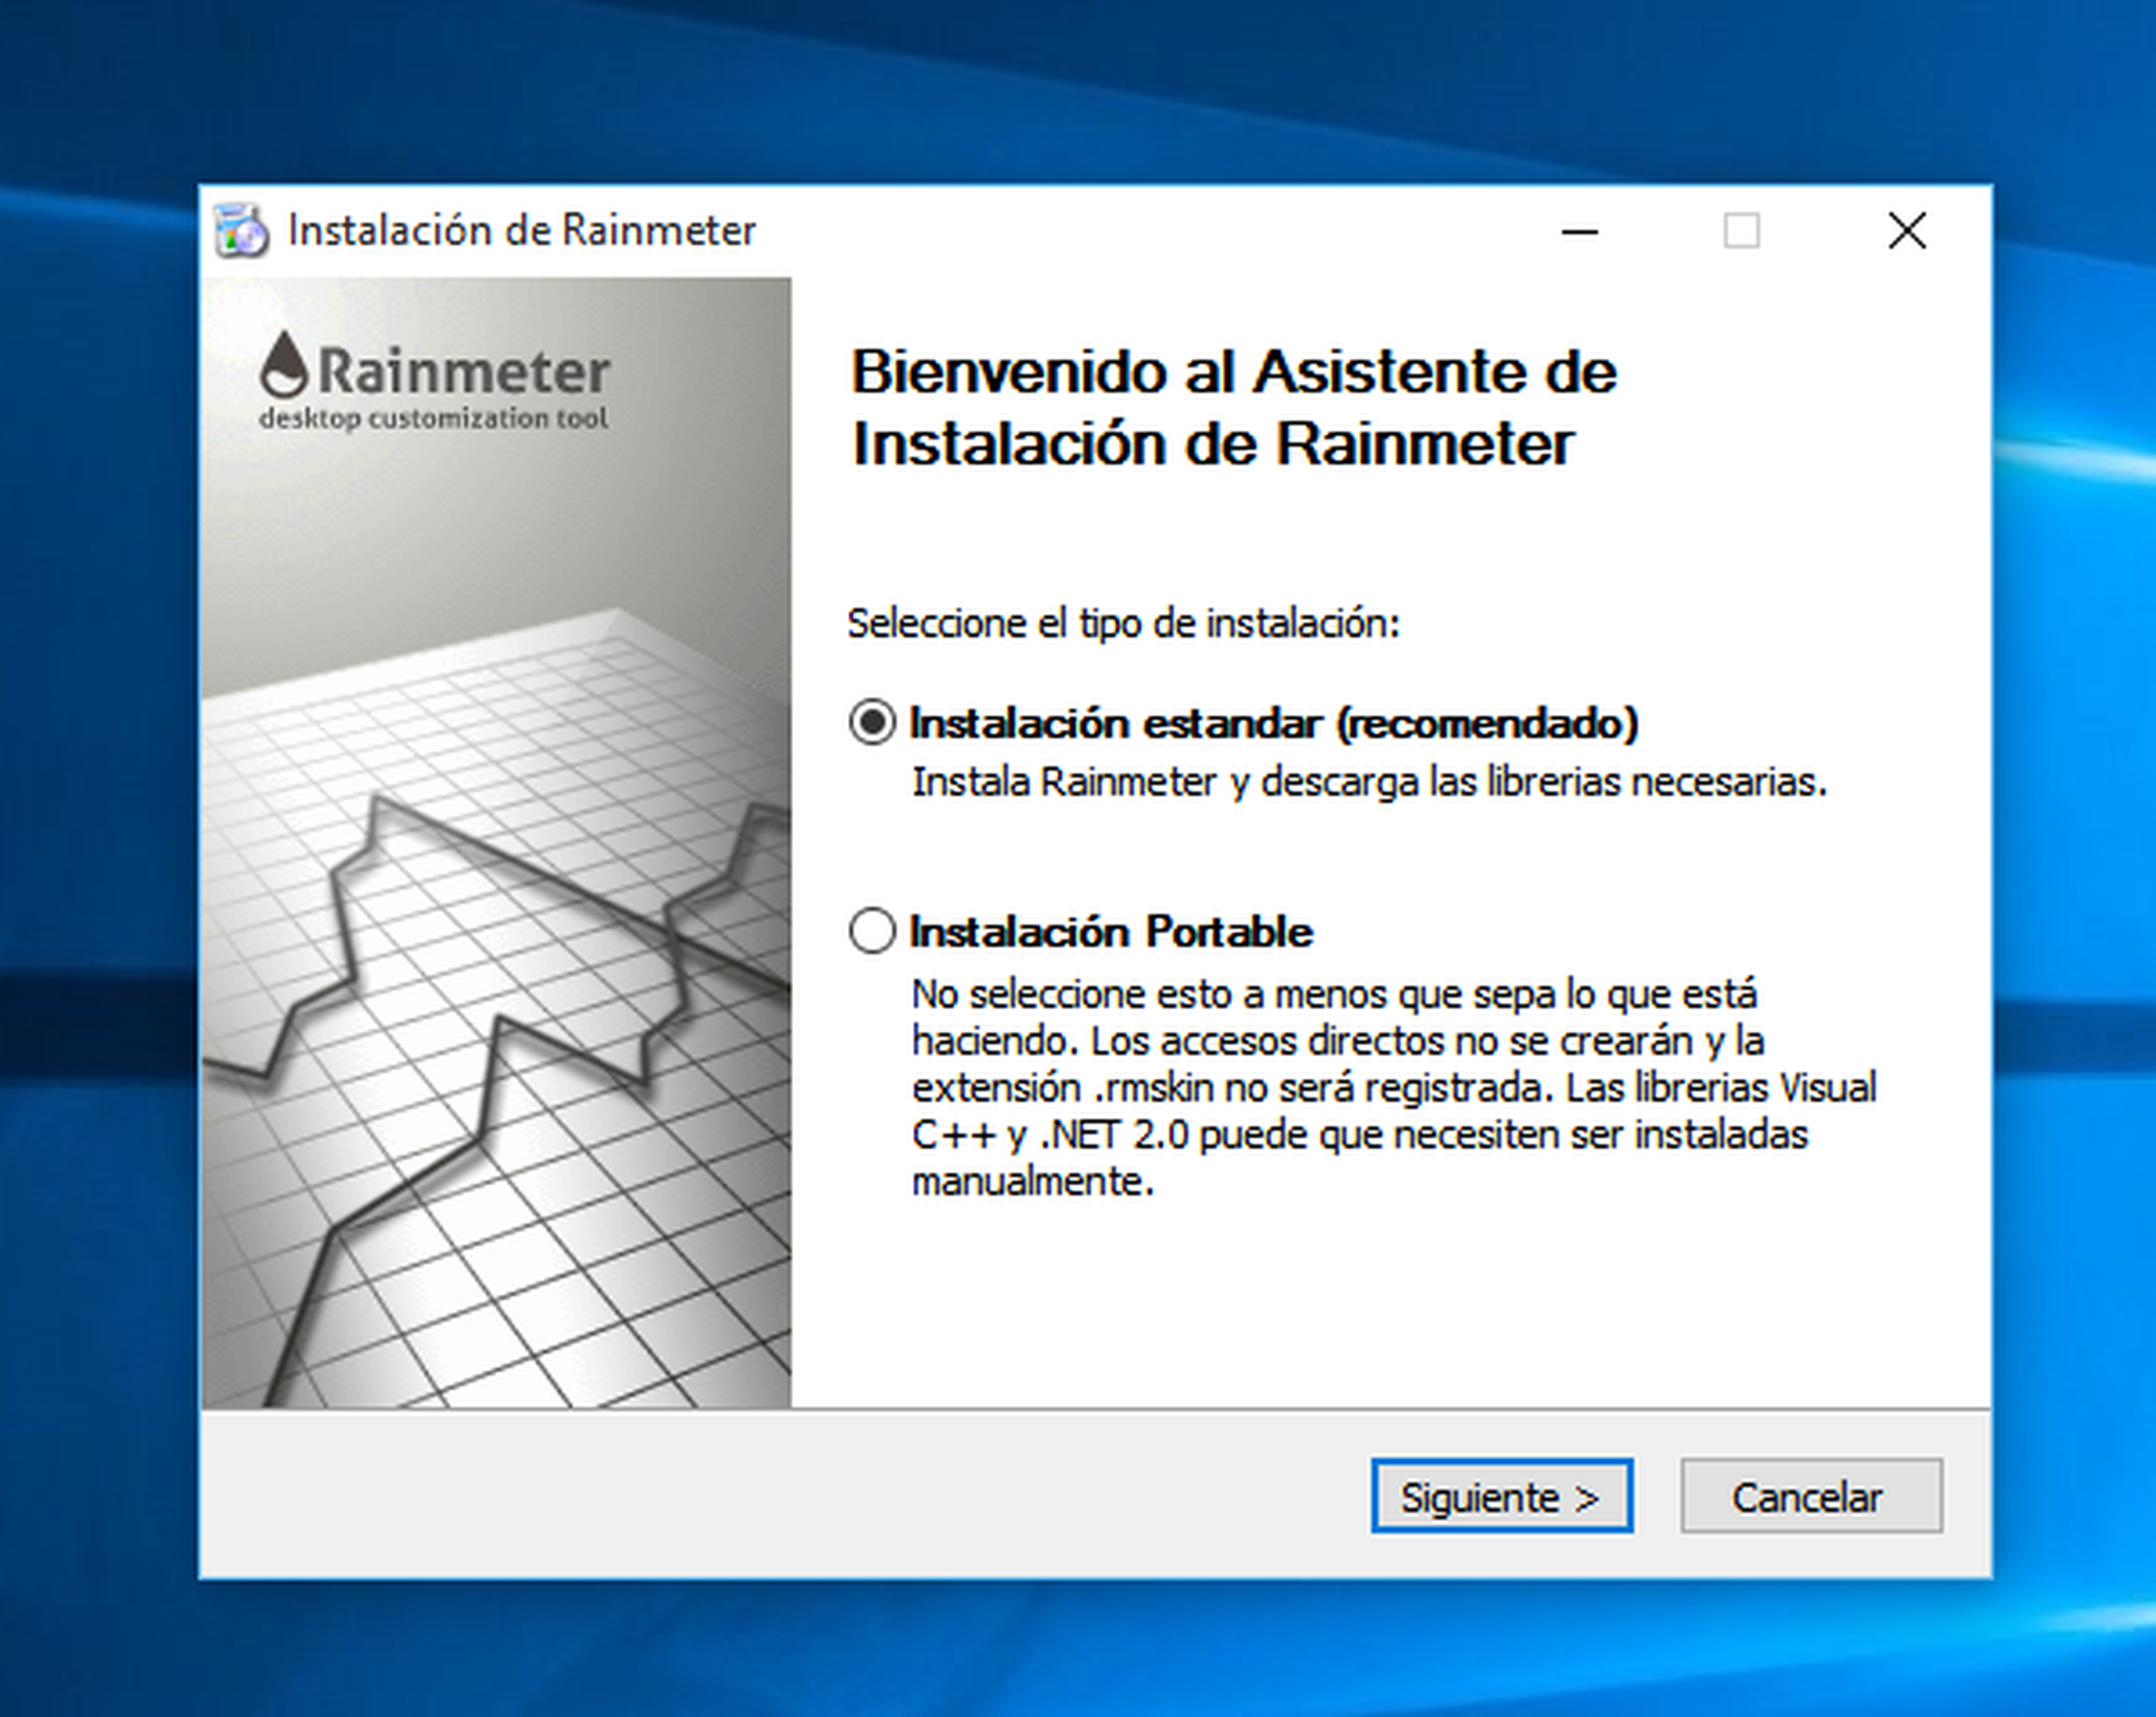 El primer paso para personalizar tu escritorio con Rainmeter es acceder a su página web para descargar el instalador